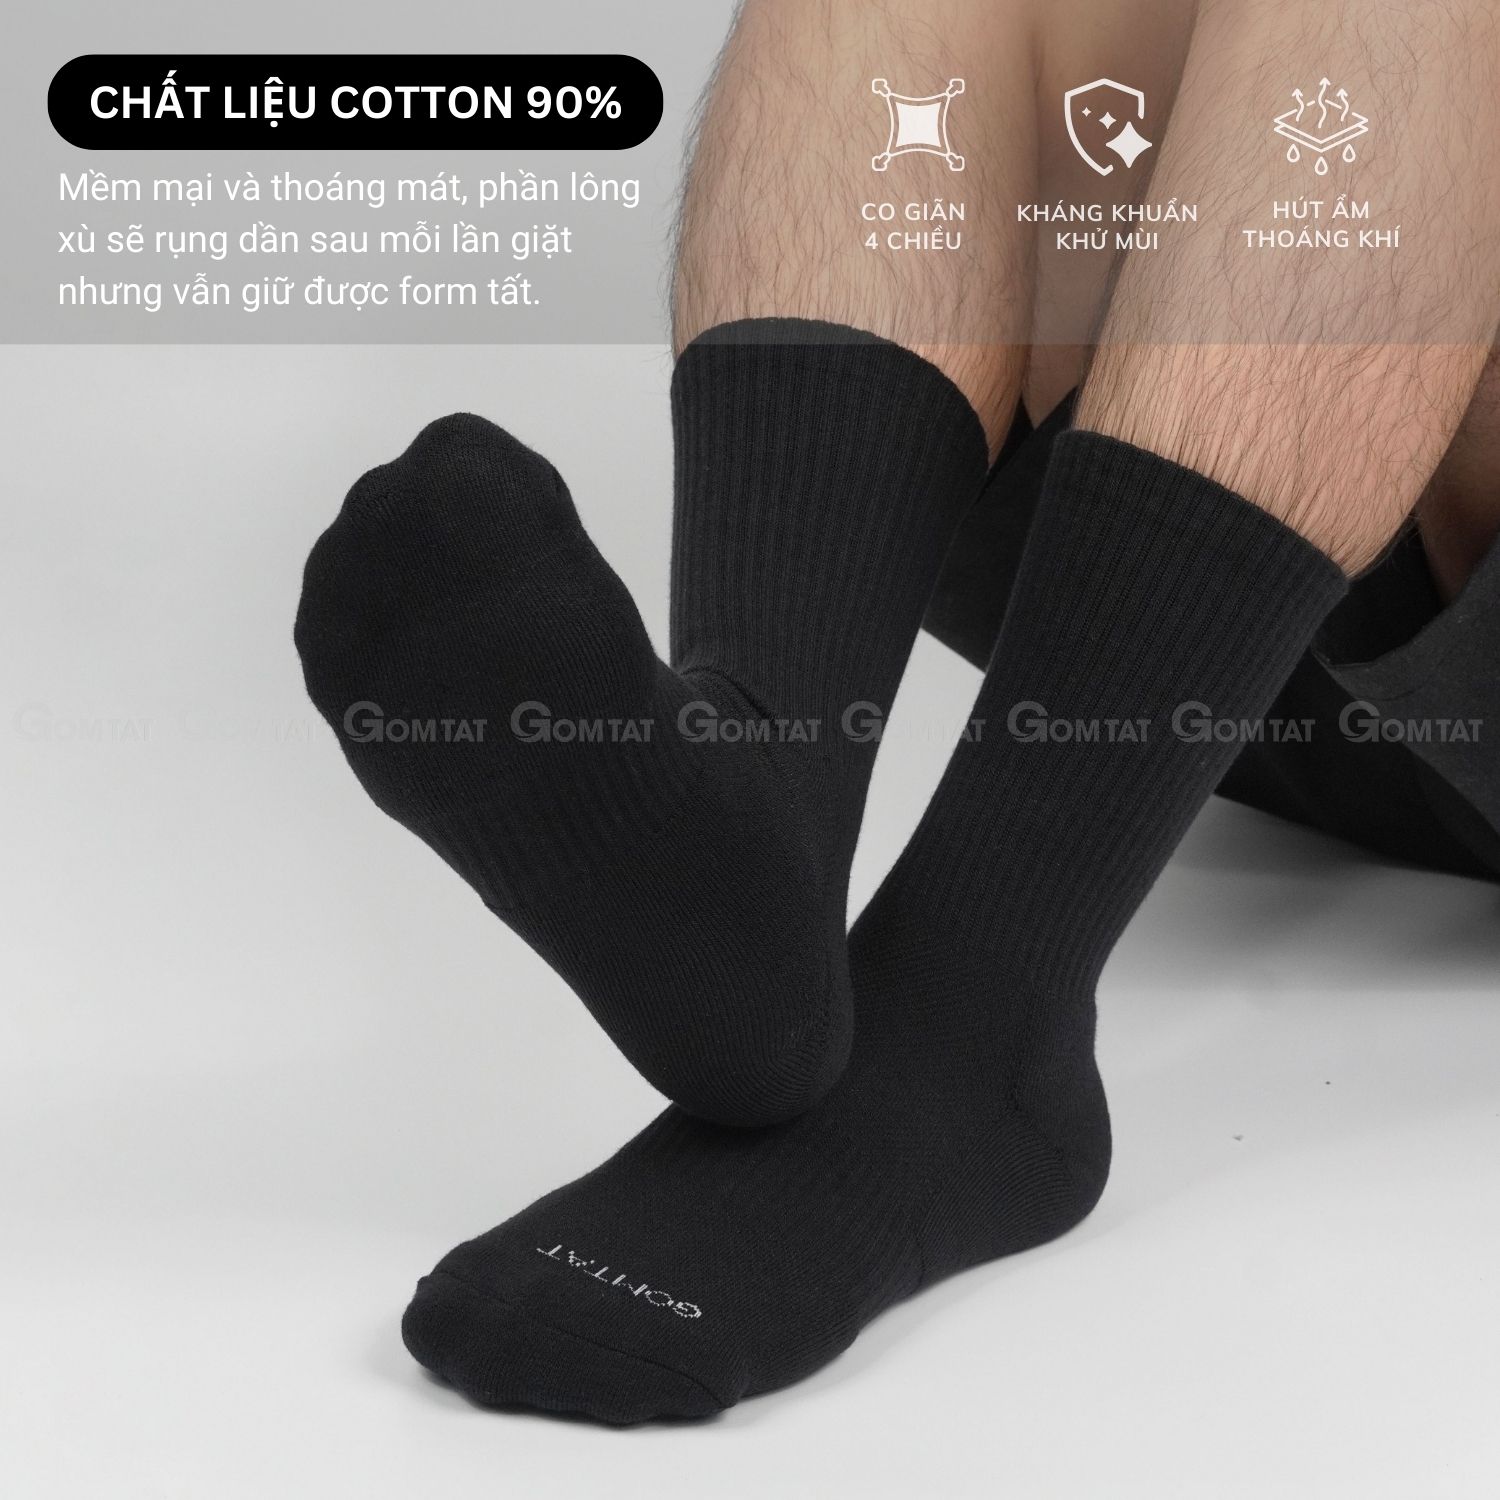 Combo 5 đôi tất đen nam nữ GOMTAT có đệm xù êm chân, sợi cotton dày dặn, khử mùi kháng khuẩn - NGAN-STA-5009-DEN-CB5